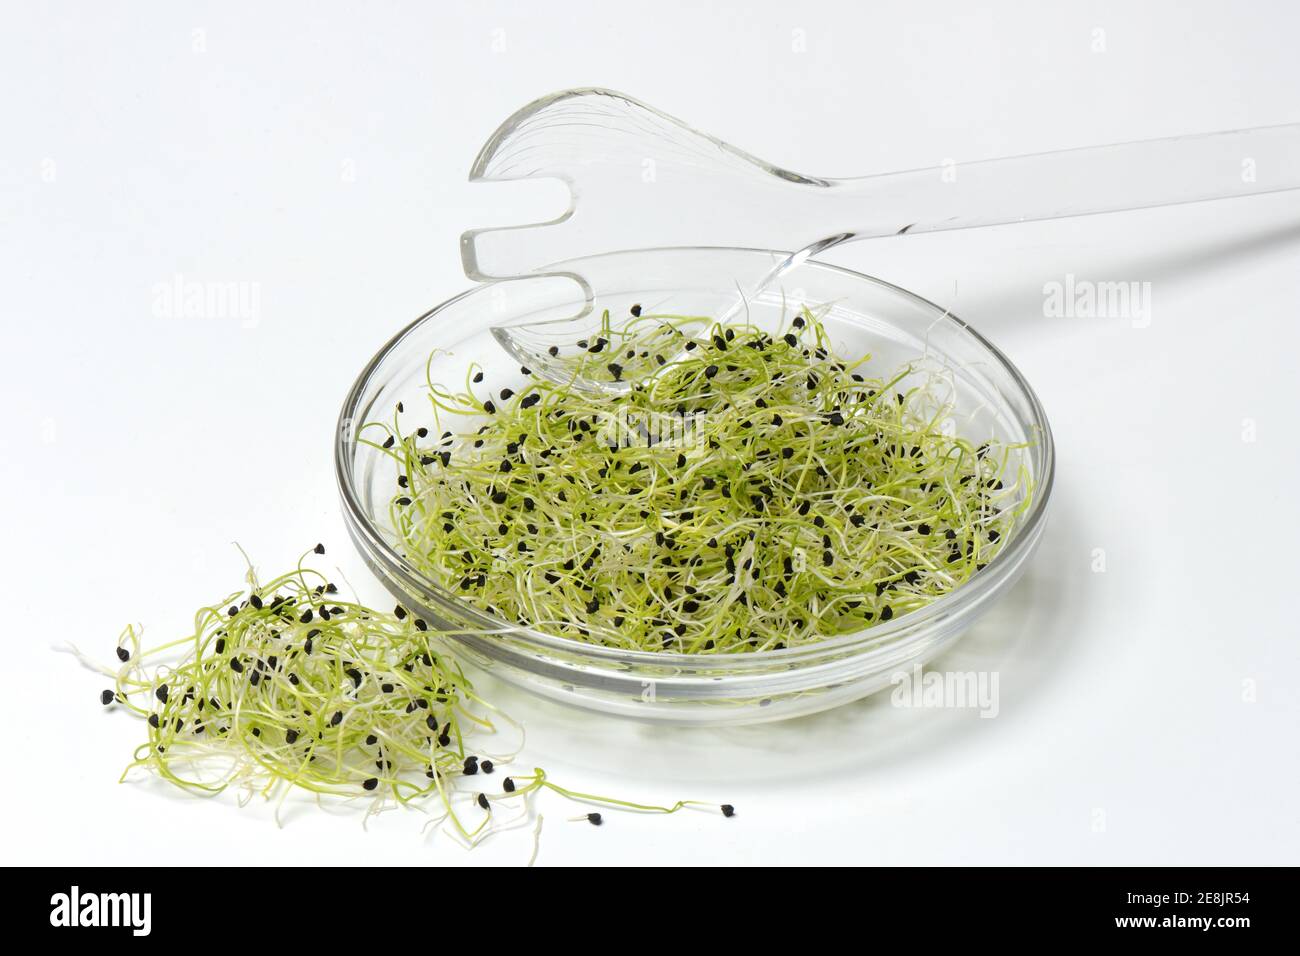 Pousses d'oignon en pelure et cuillère à salade, spéc. Allium Banque D'Images